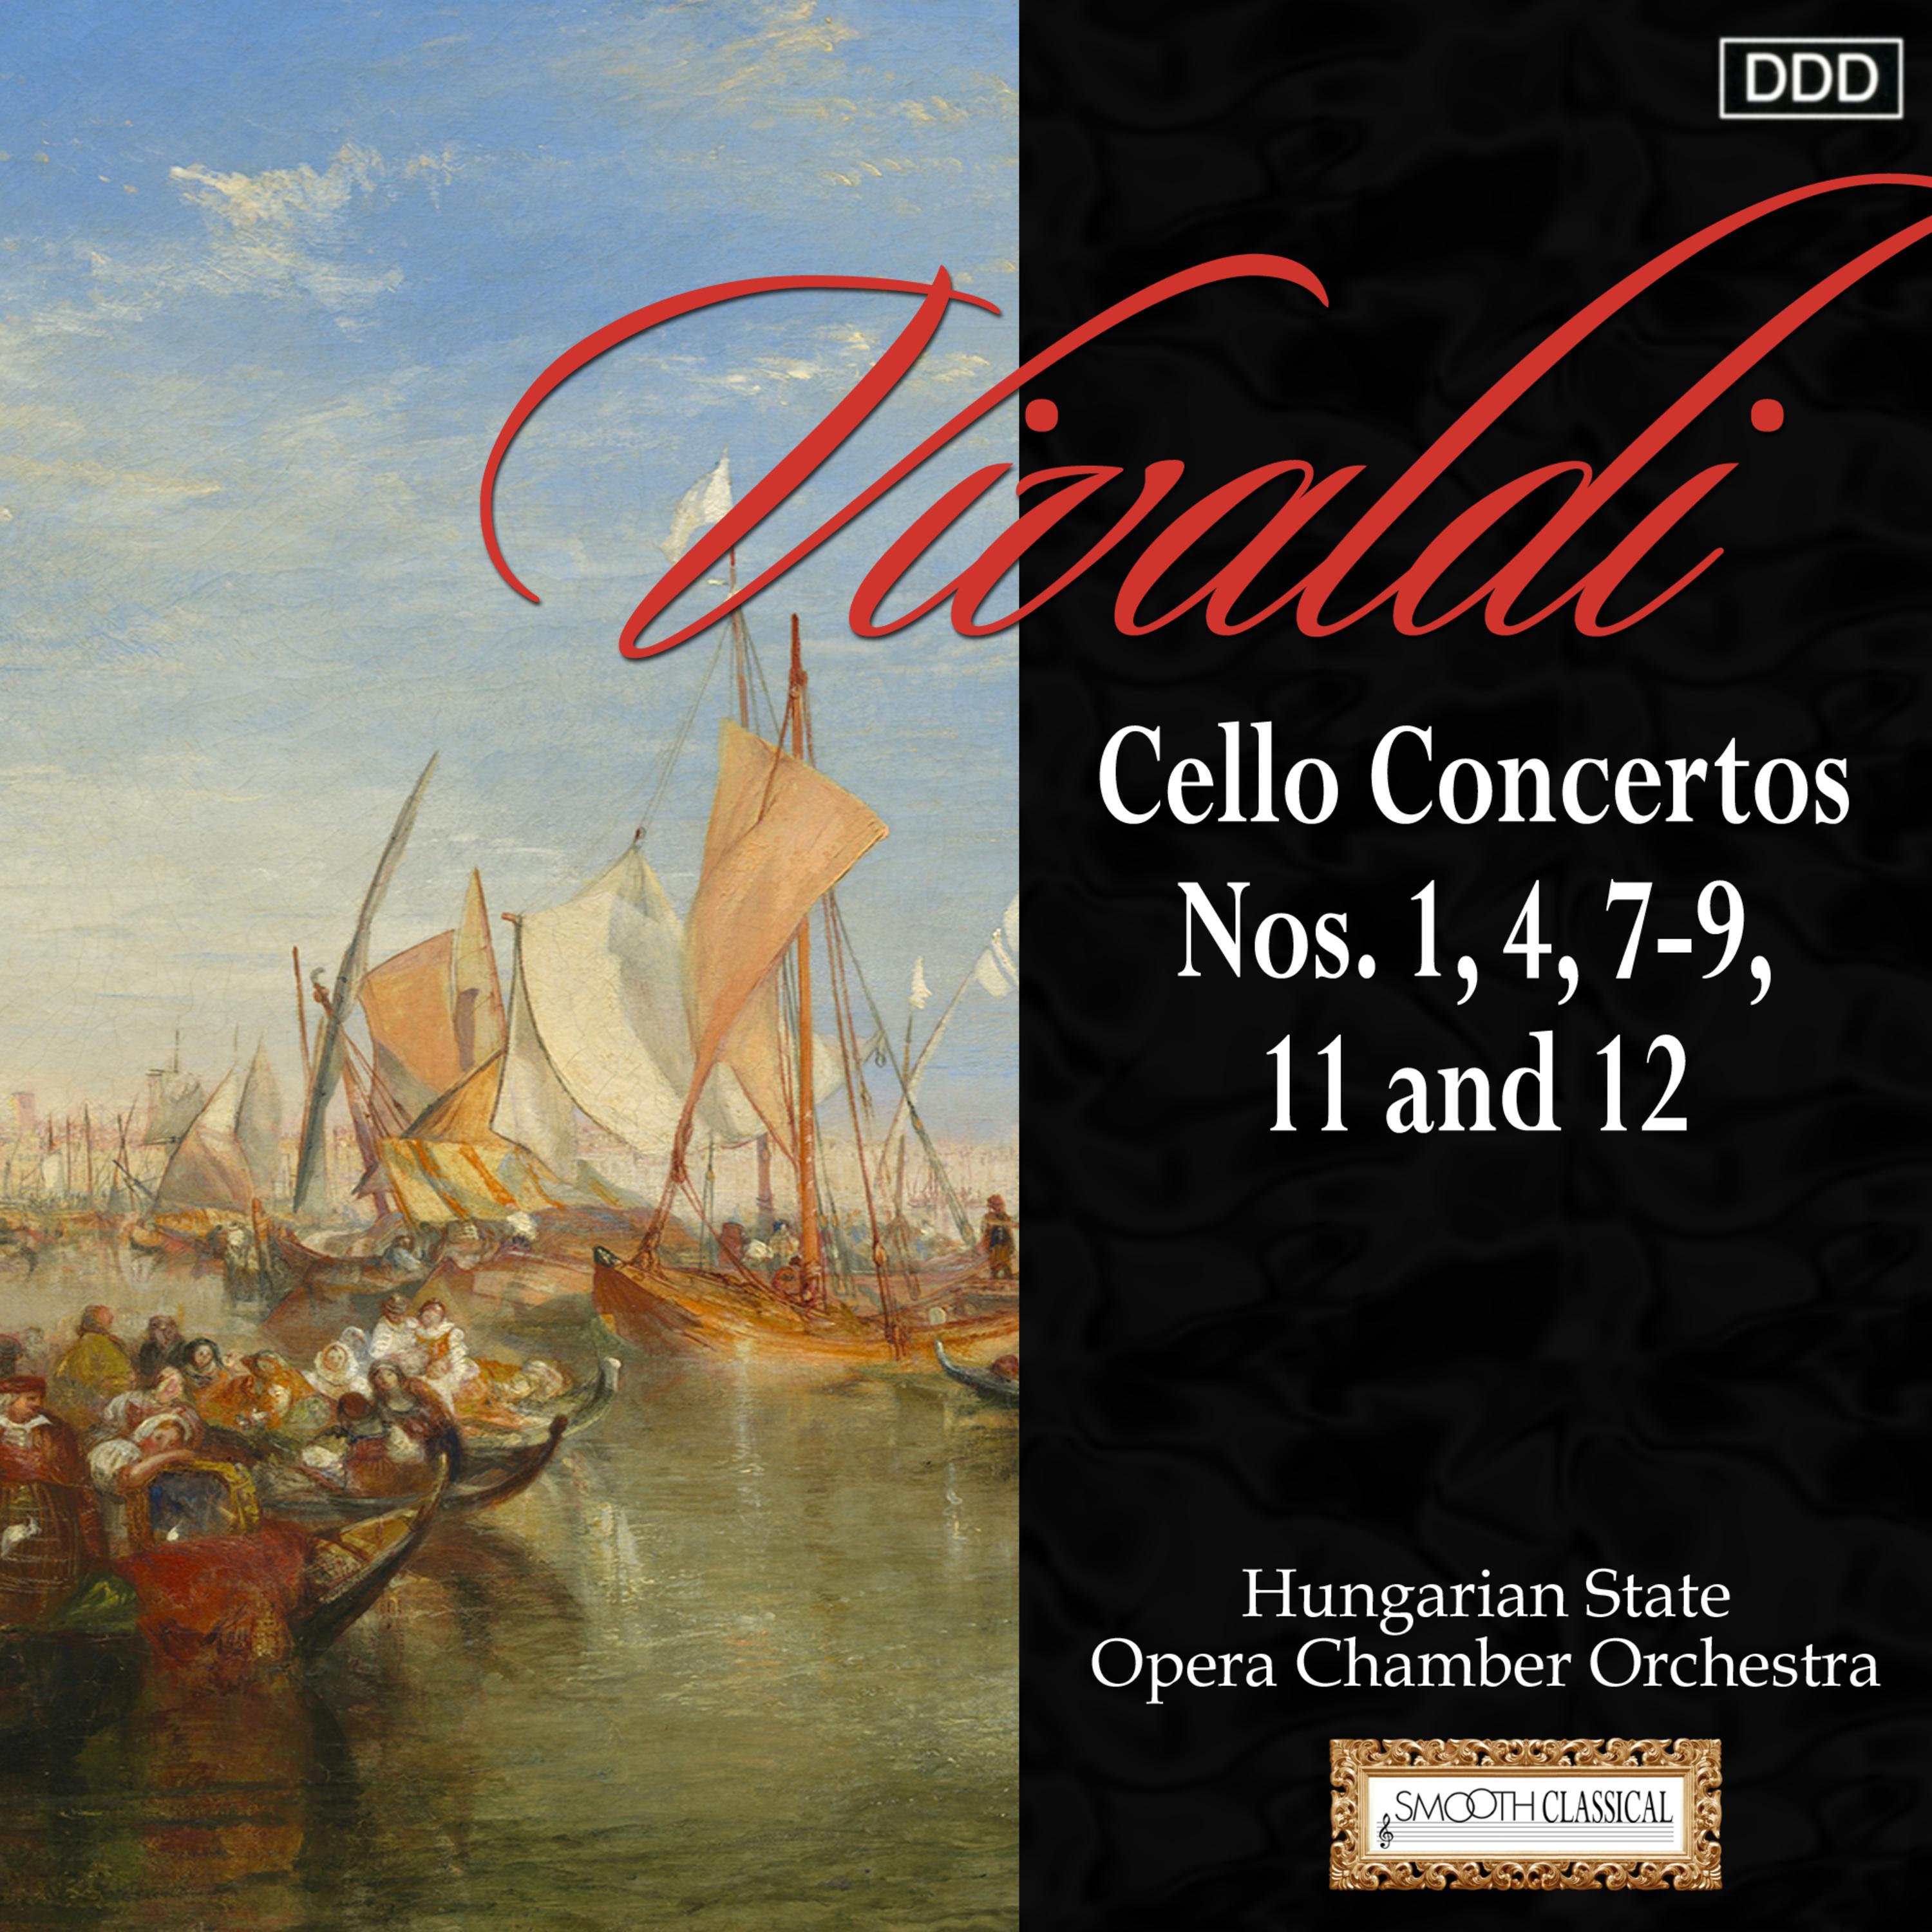 Hungarian State Opera Chamber Orchestra - Cello Concerto in B Minor, RV 424: III. Allegro